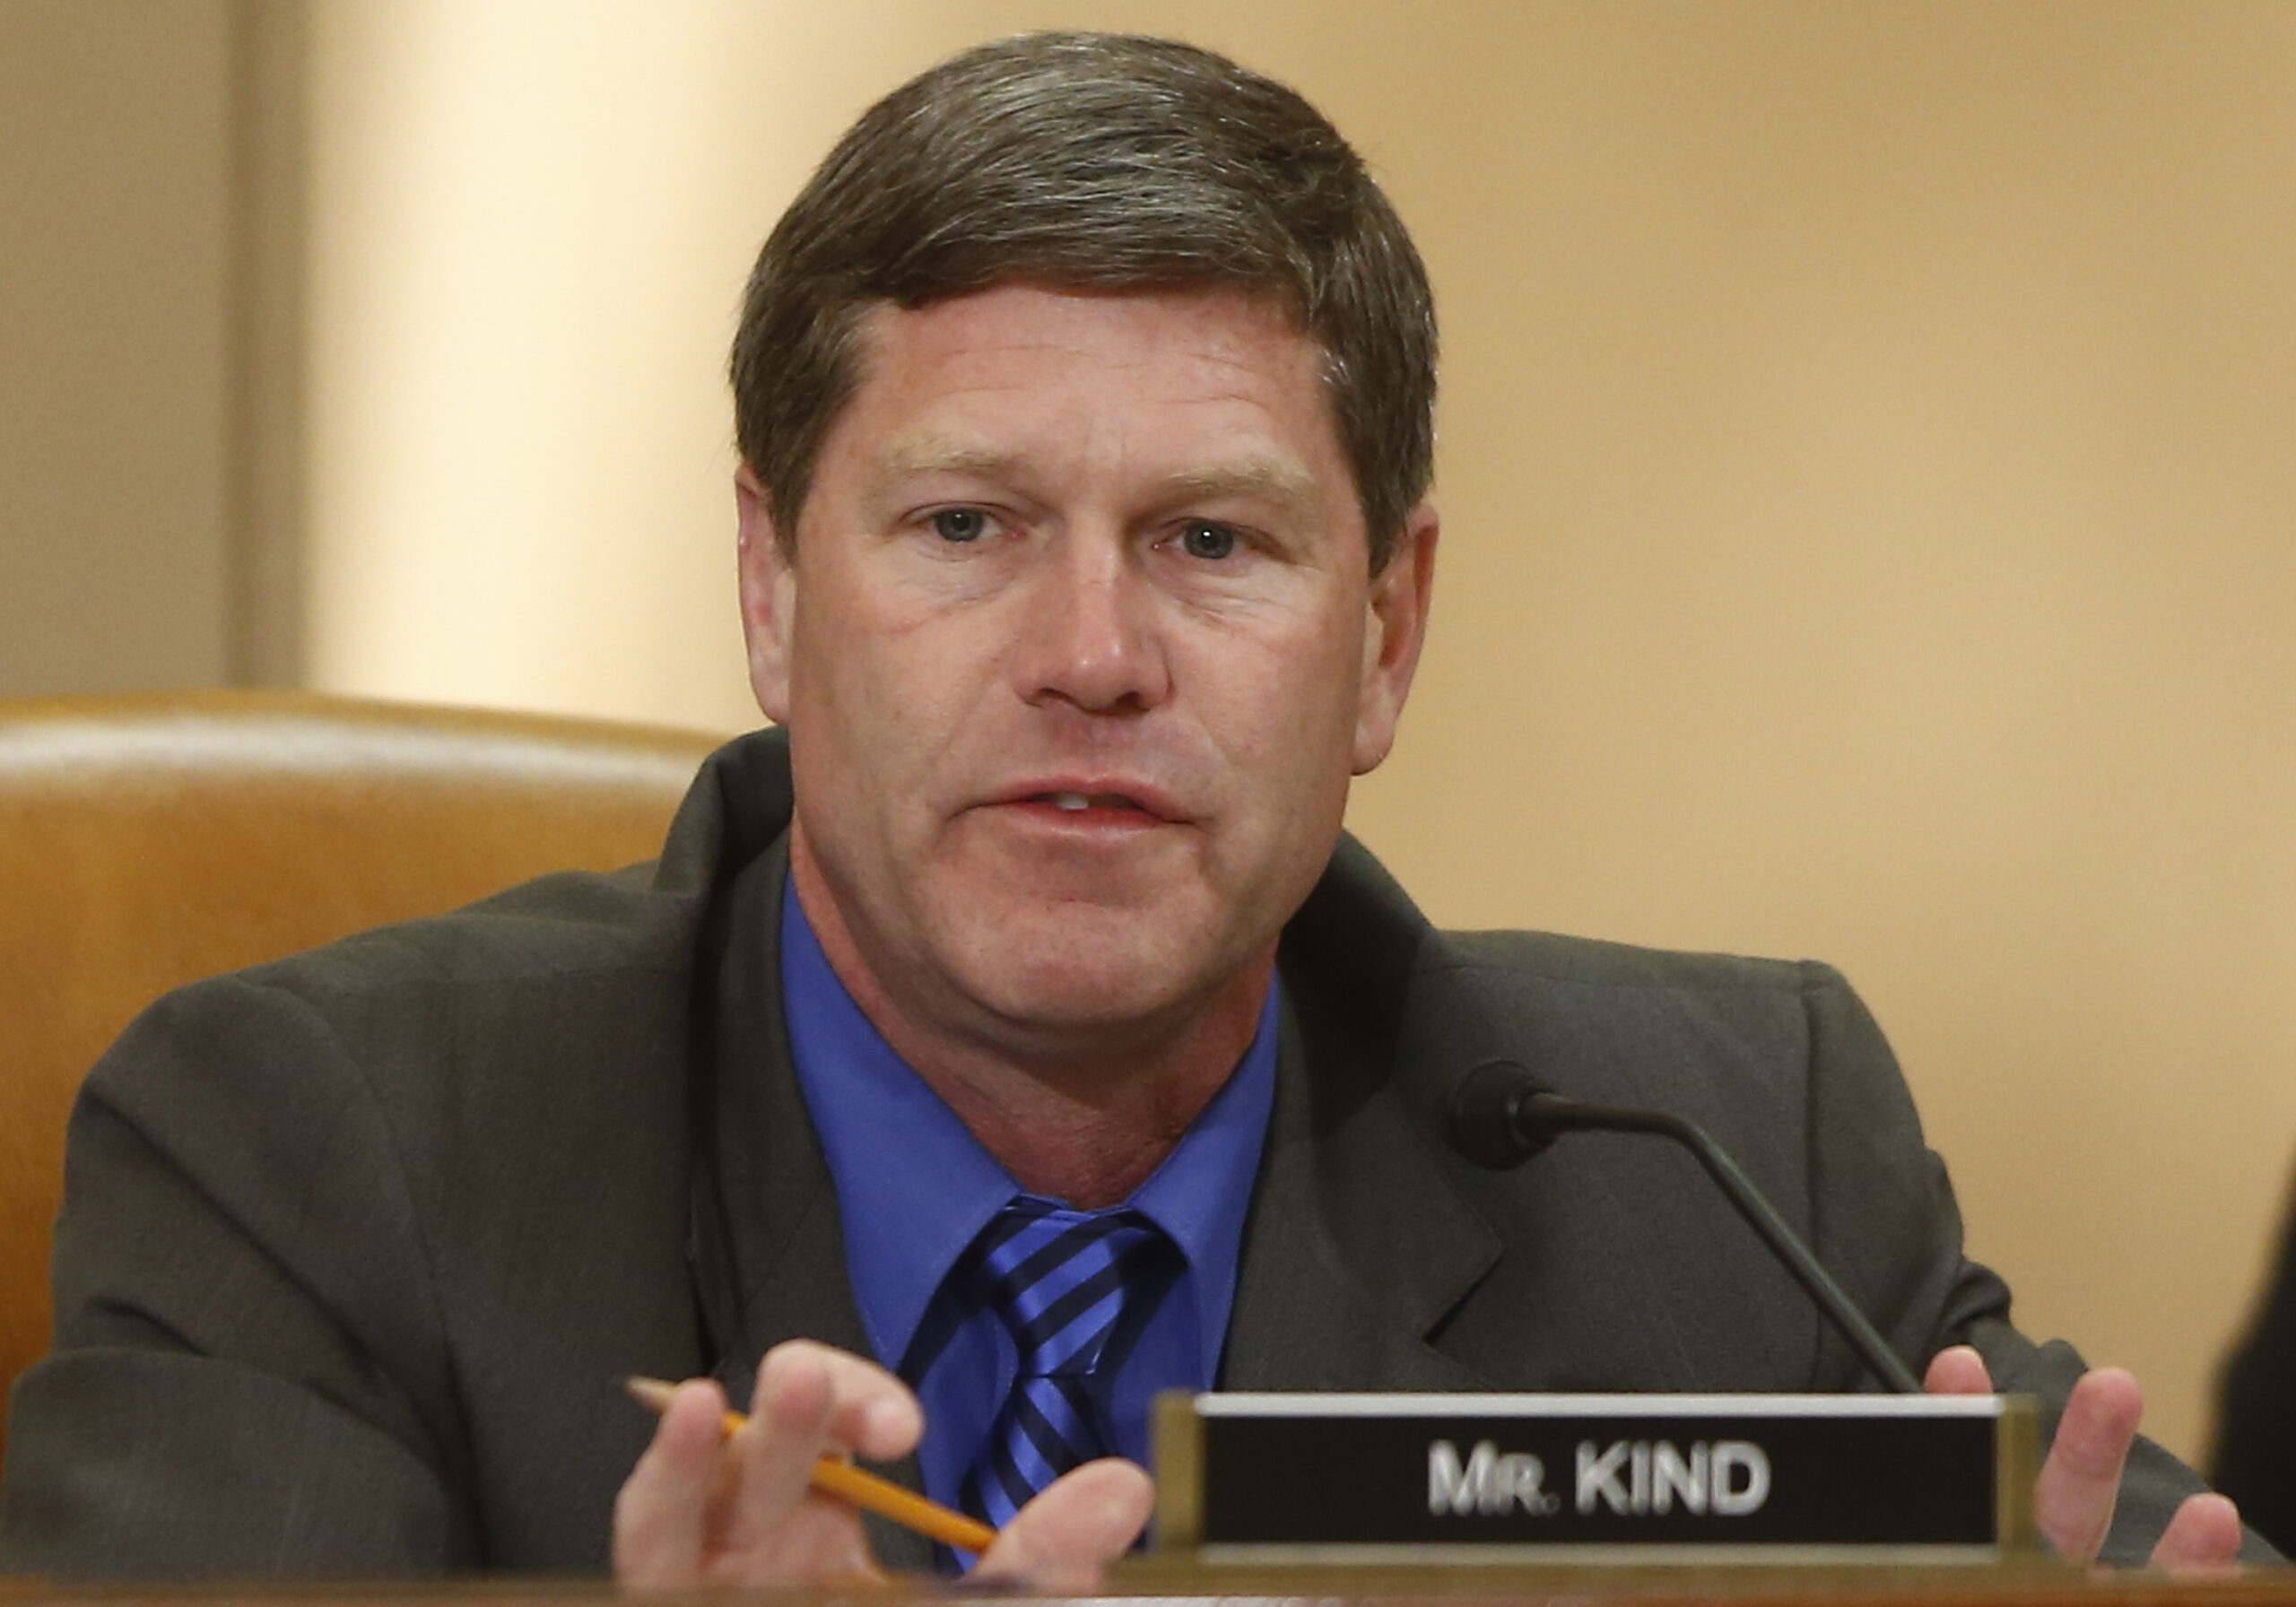 Representative Ron Kind